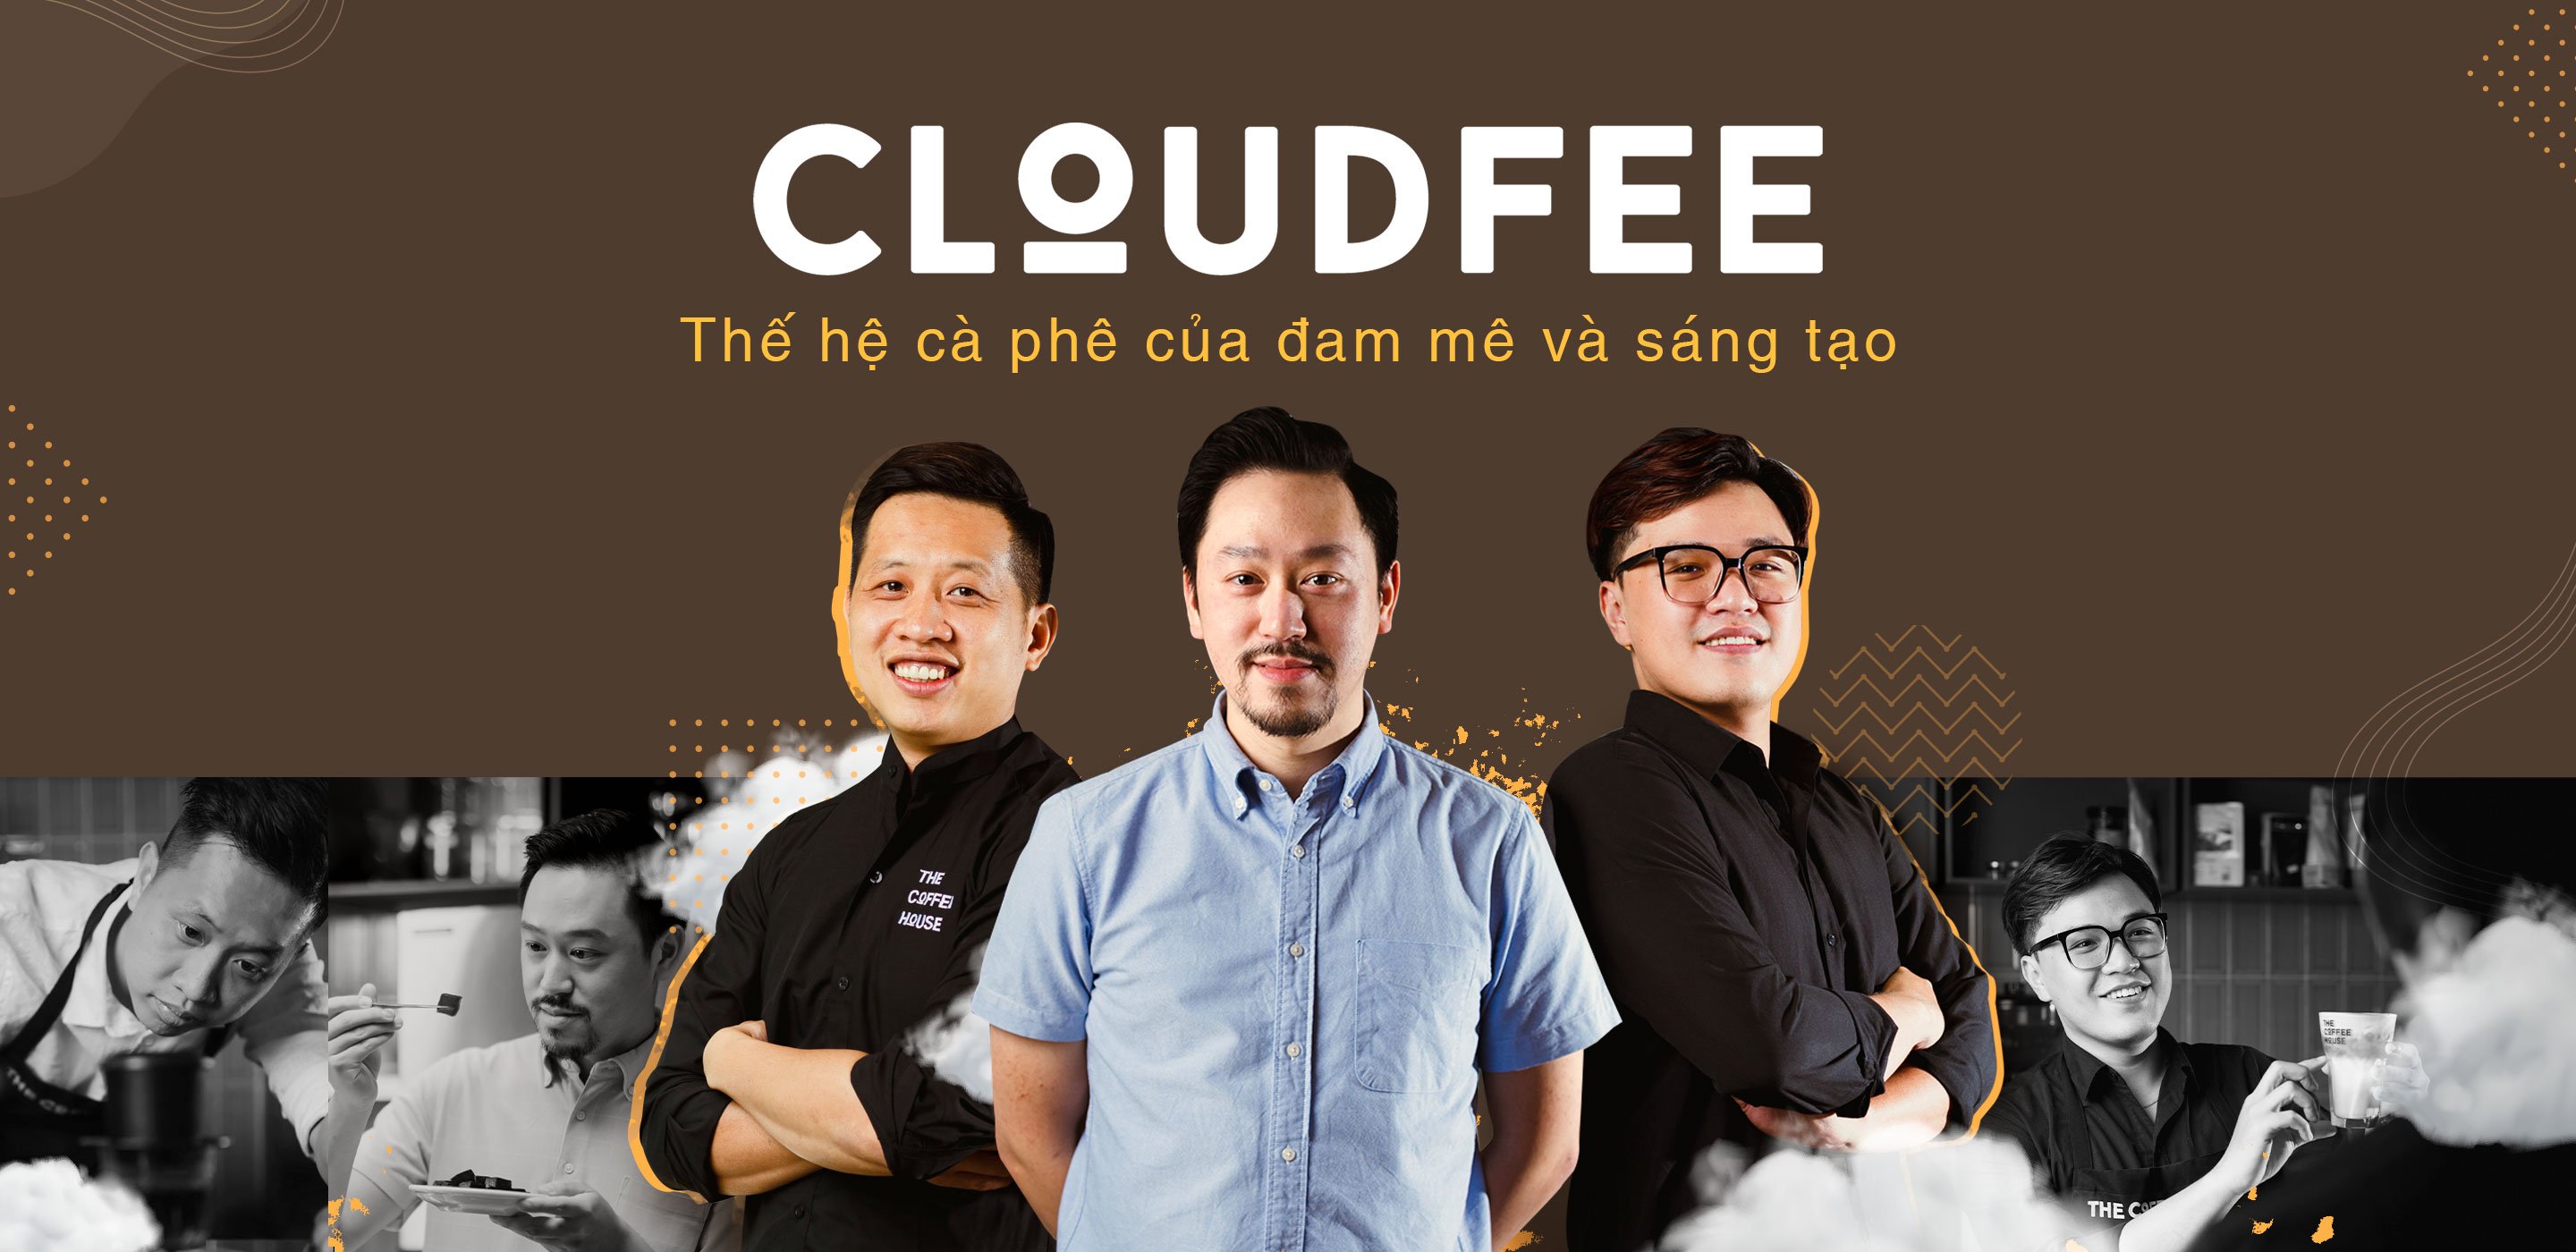 Cloudfee - Thế hệ cà phê mới